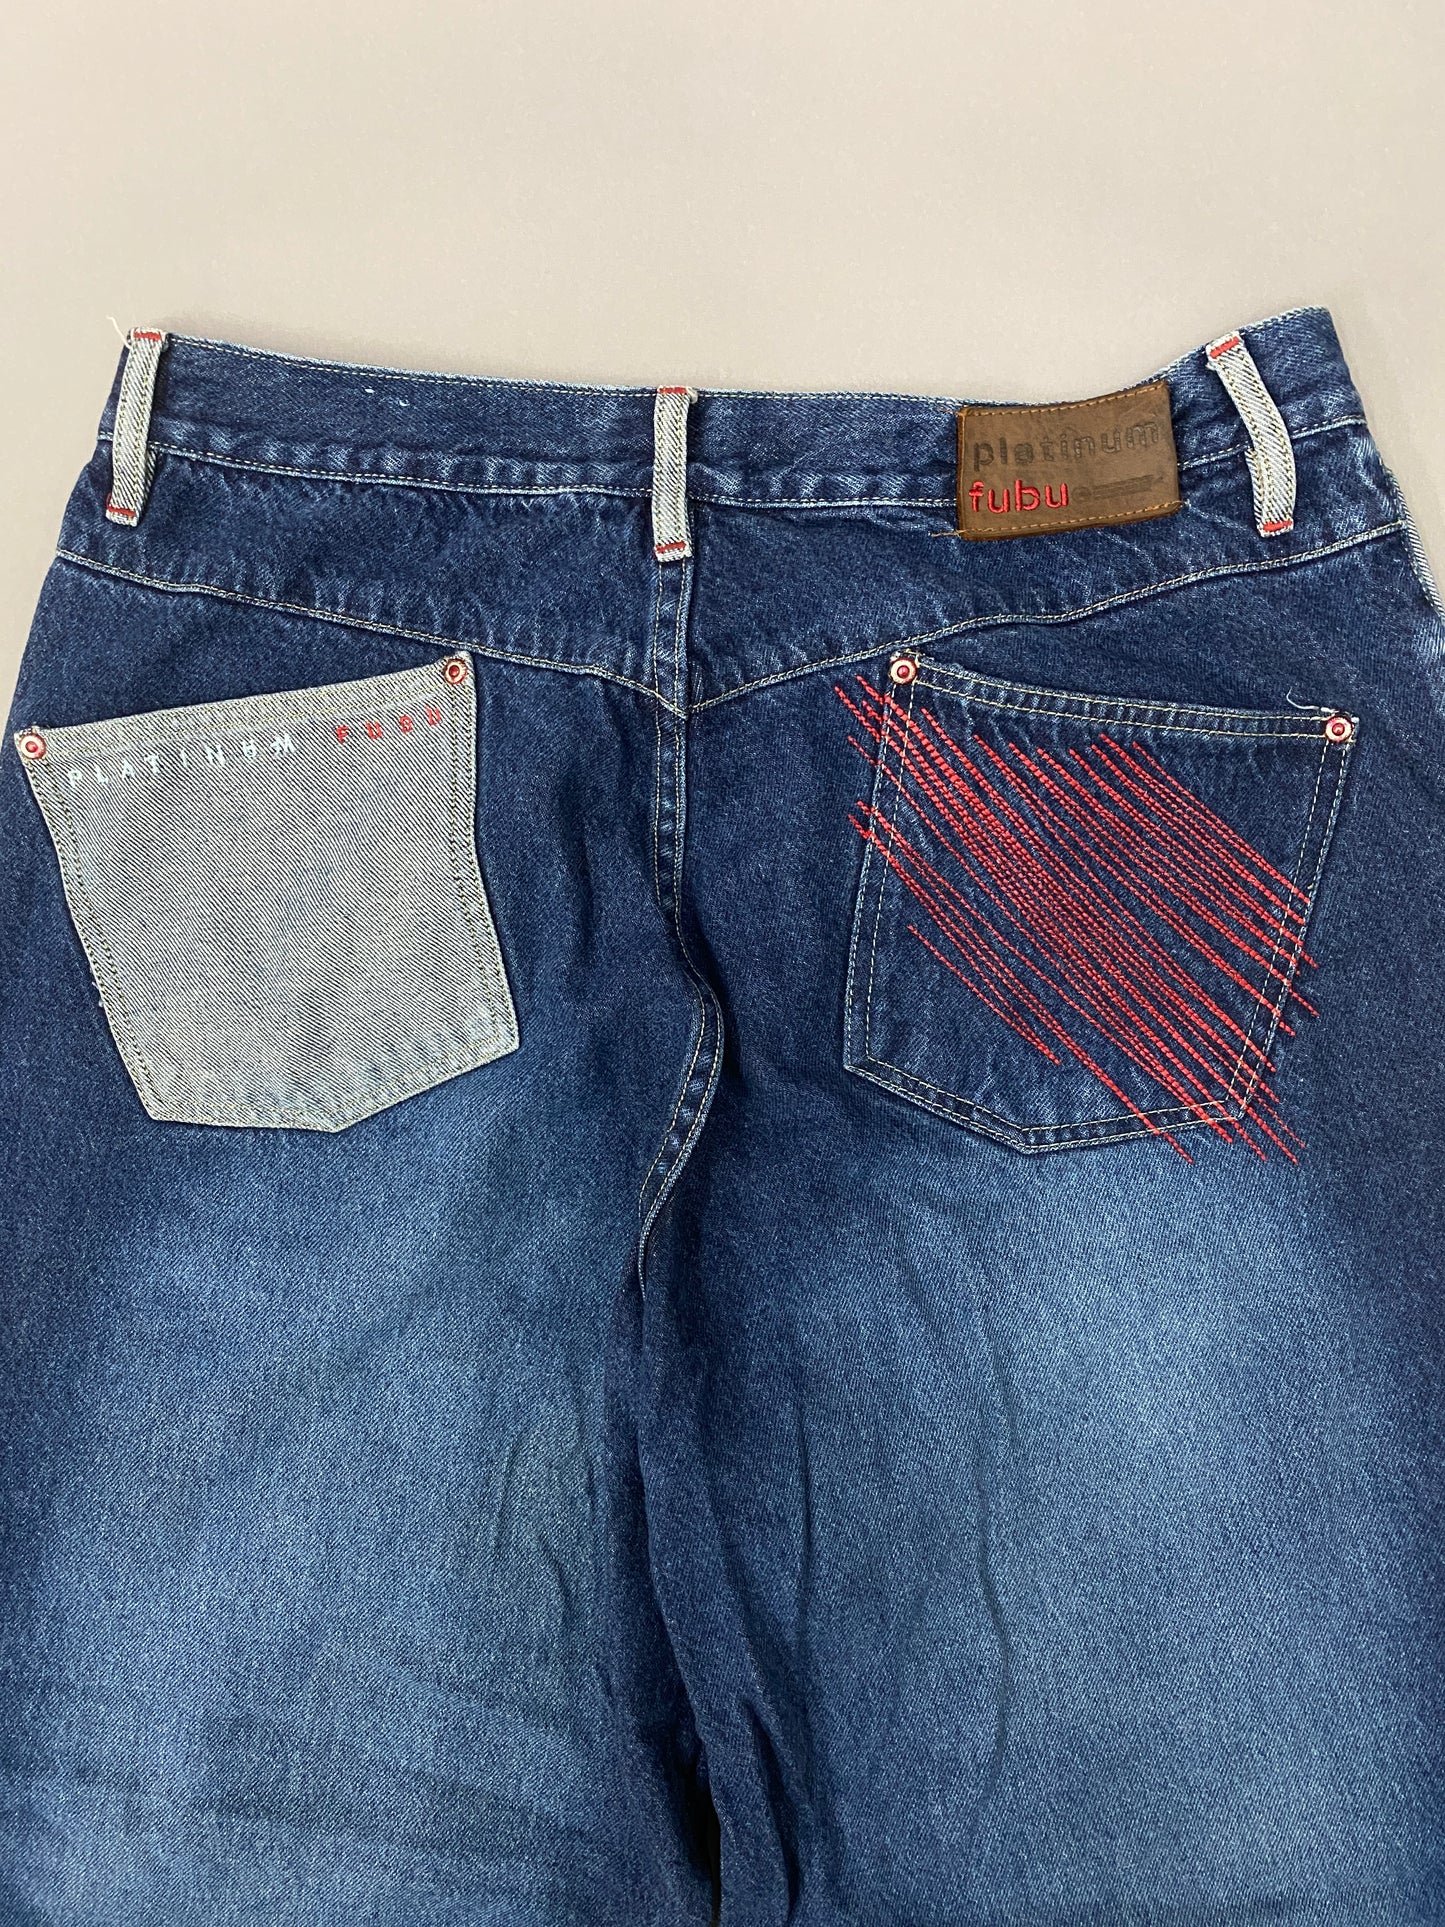 Jeans Wide Fubu Platinum - 34